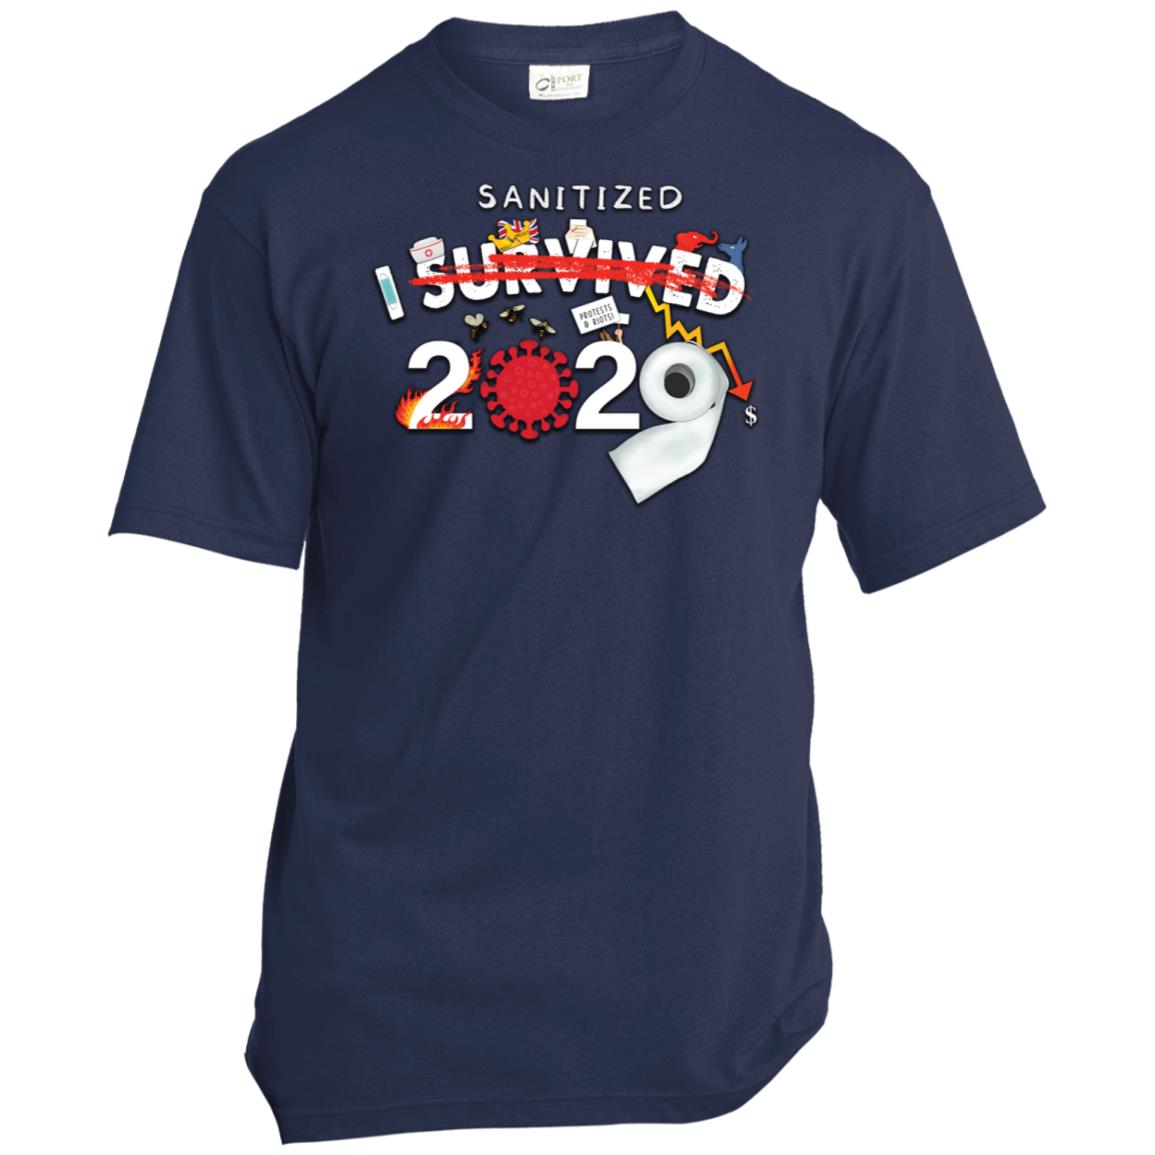 I Sanitized 2020 - Unisex T-Shirt